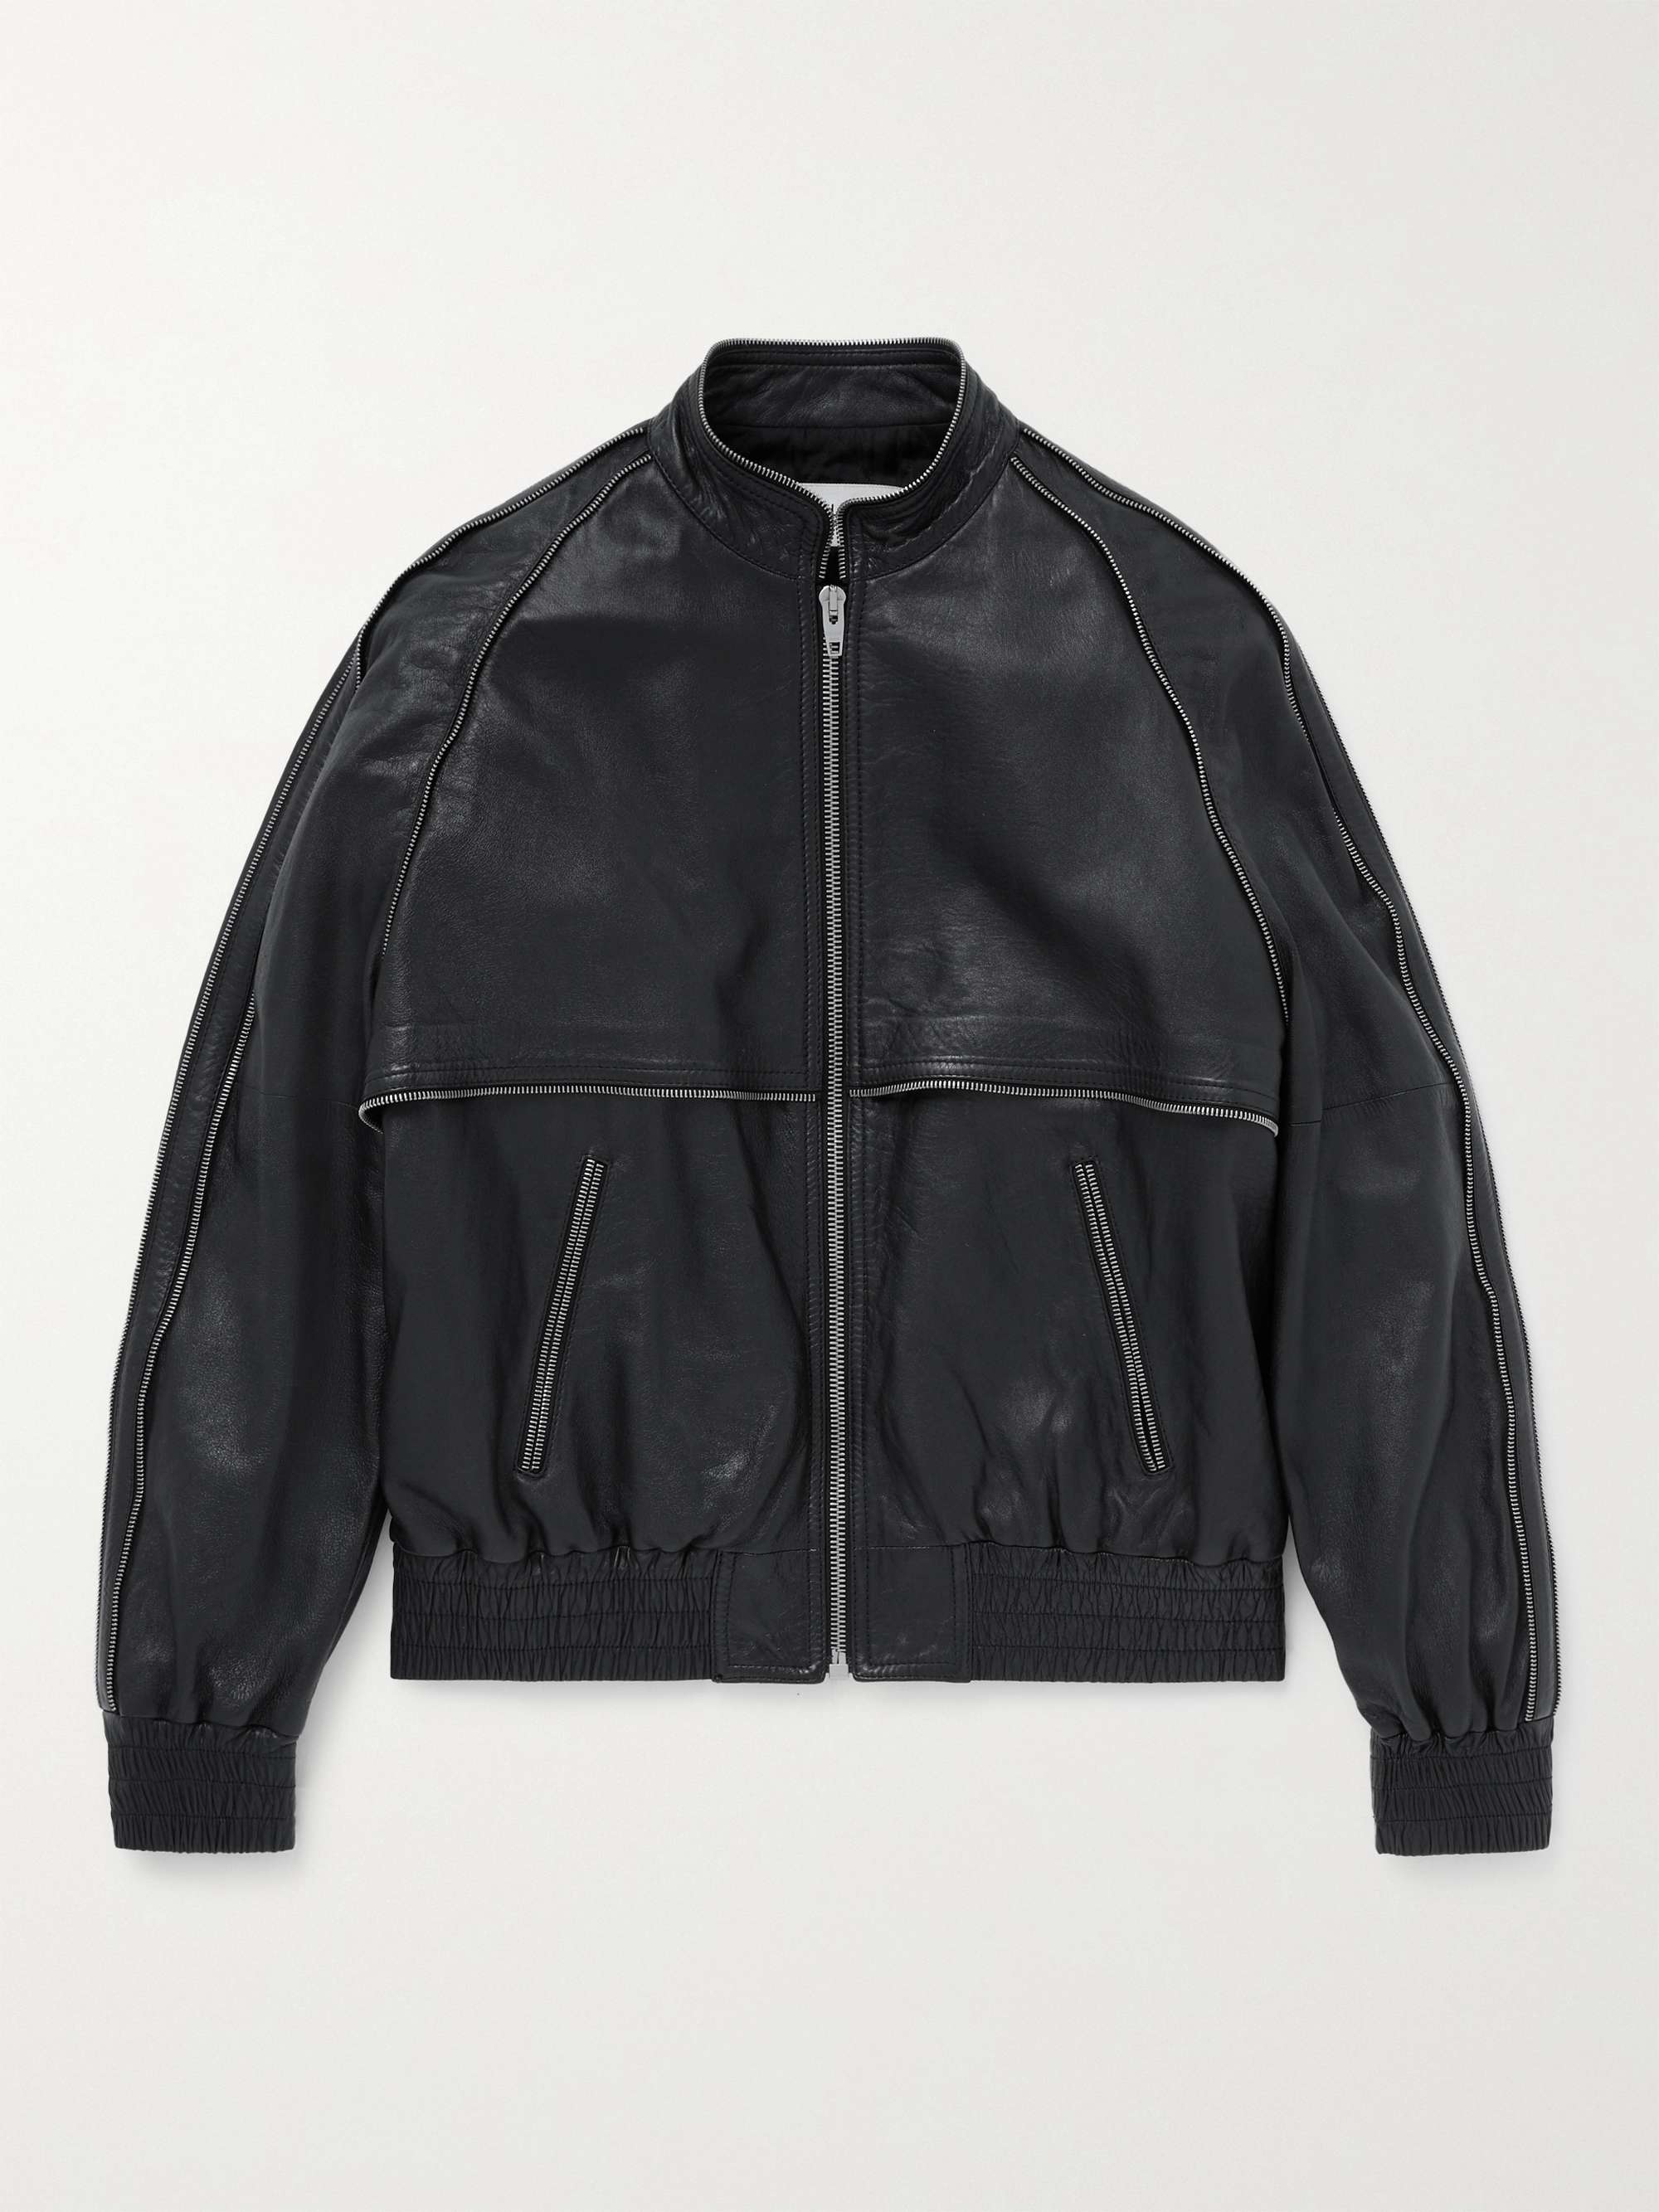 CELINE HOMME Embellished Leather Bomber Jacket